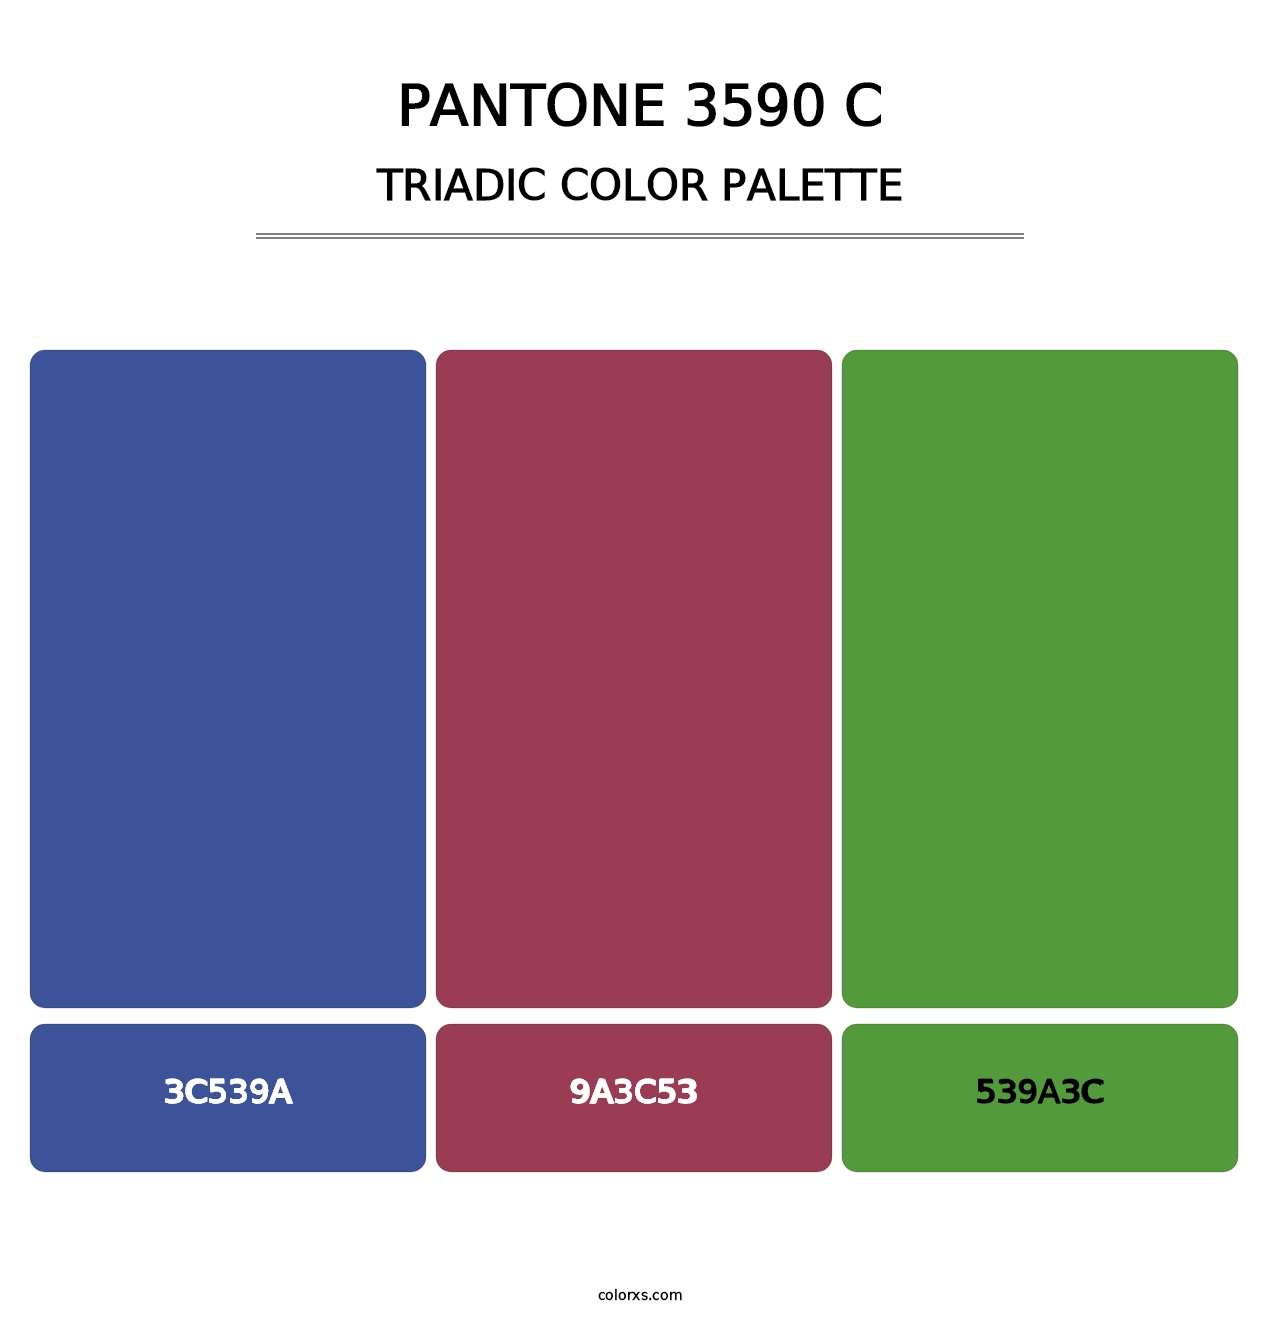 PANTONE 3590 C - Triadic Color Palette